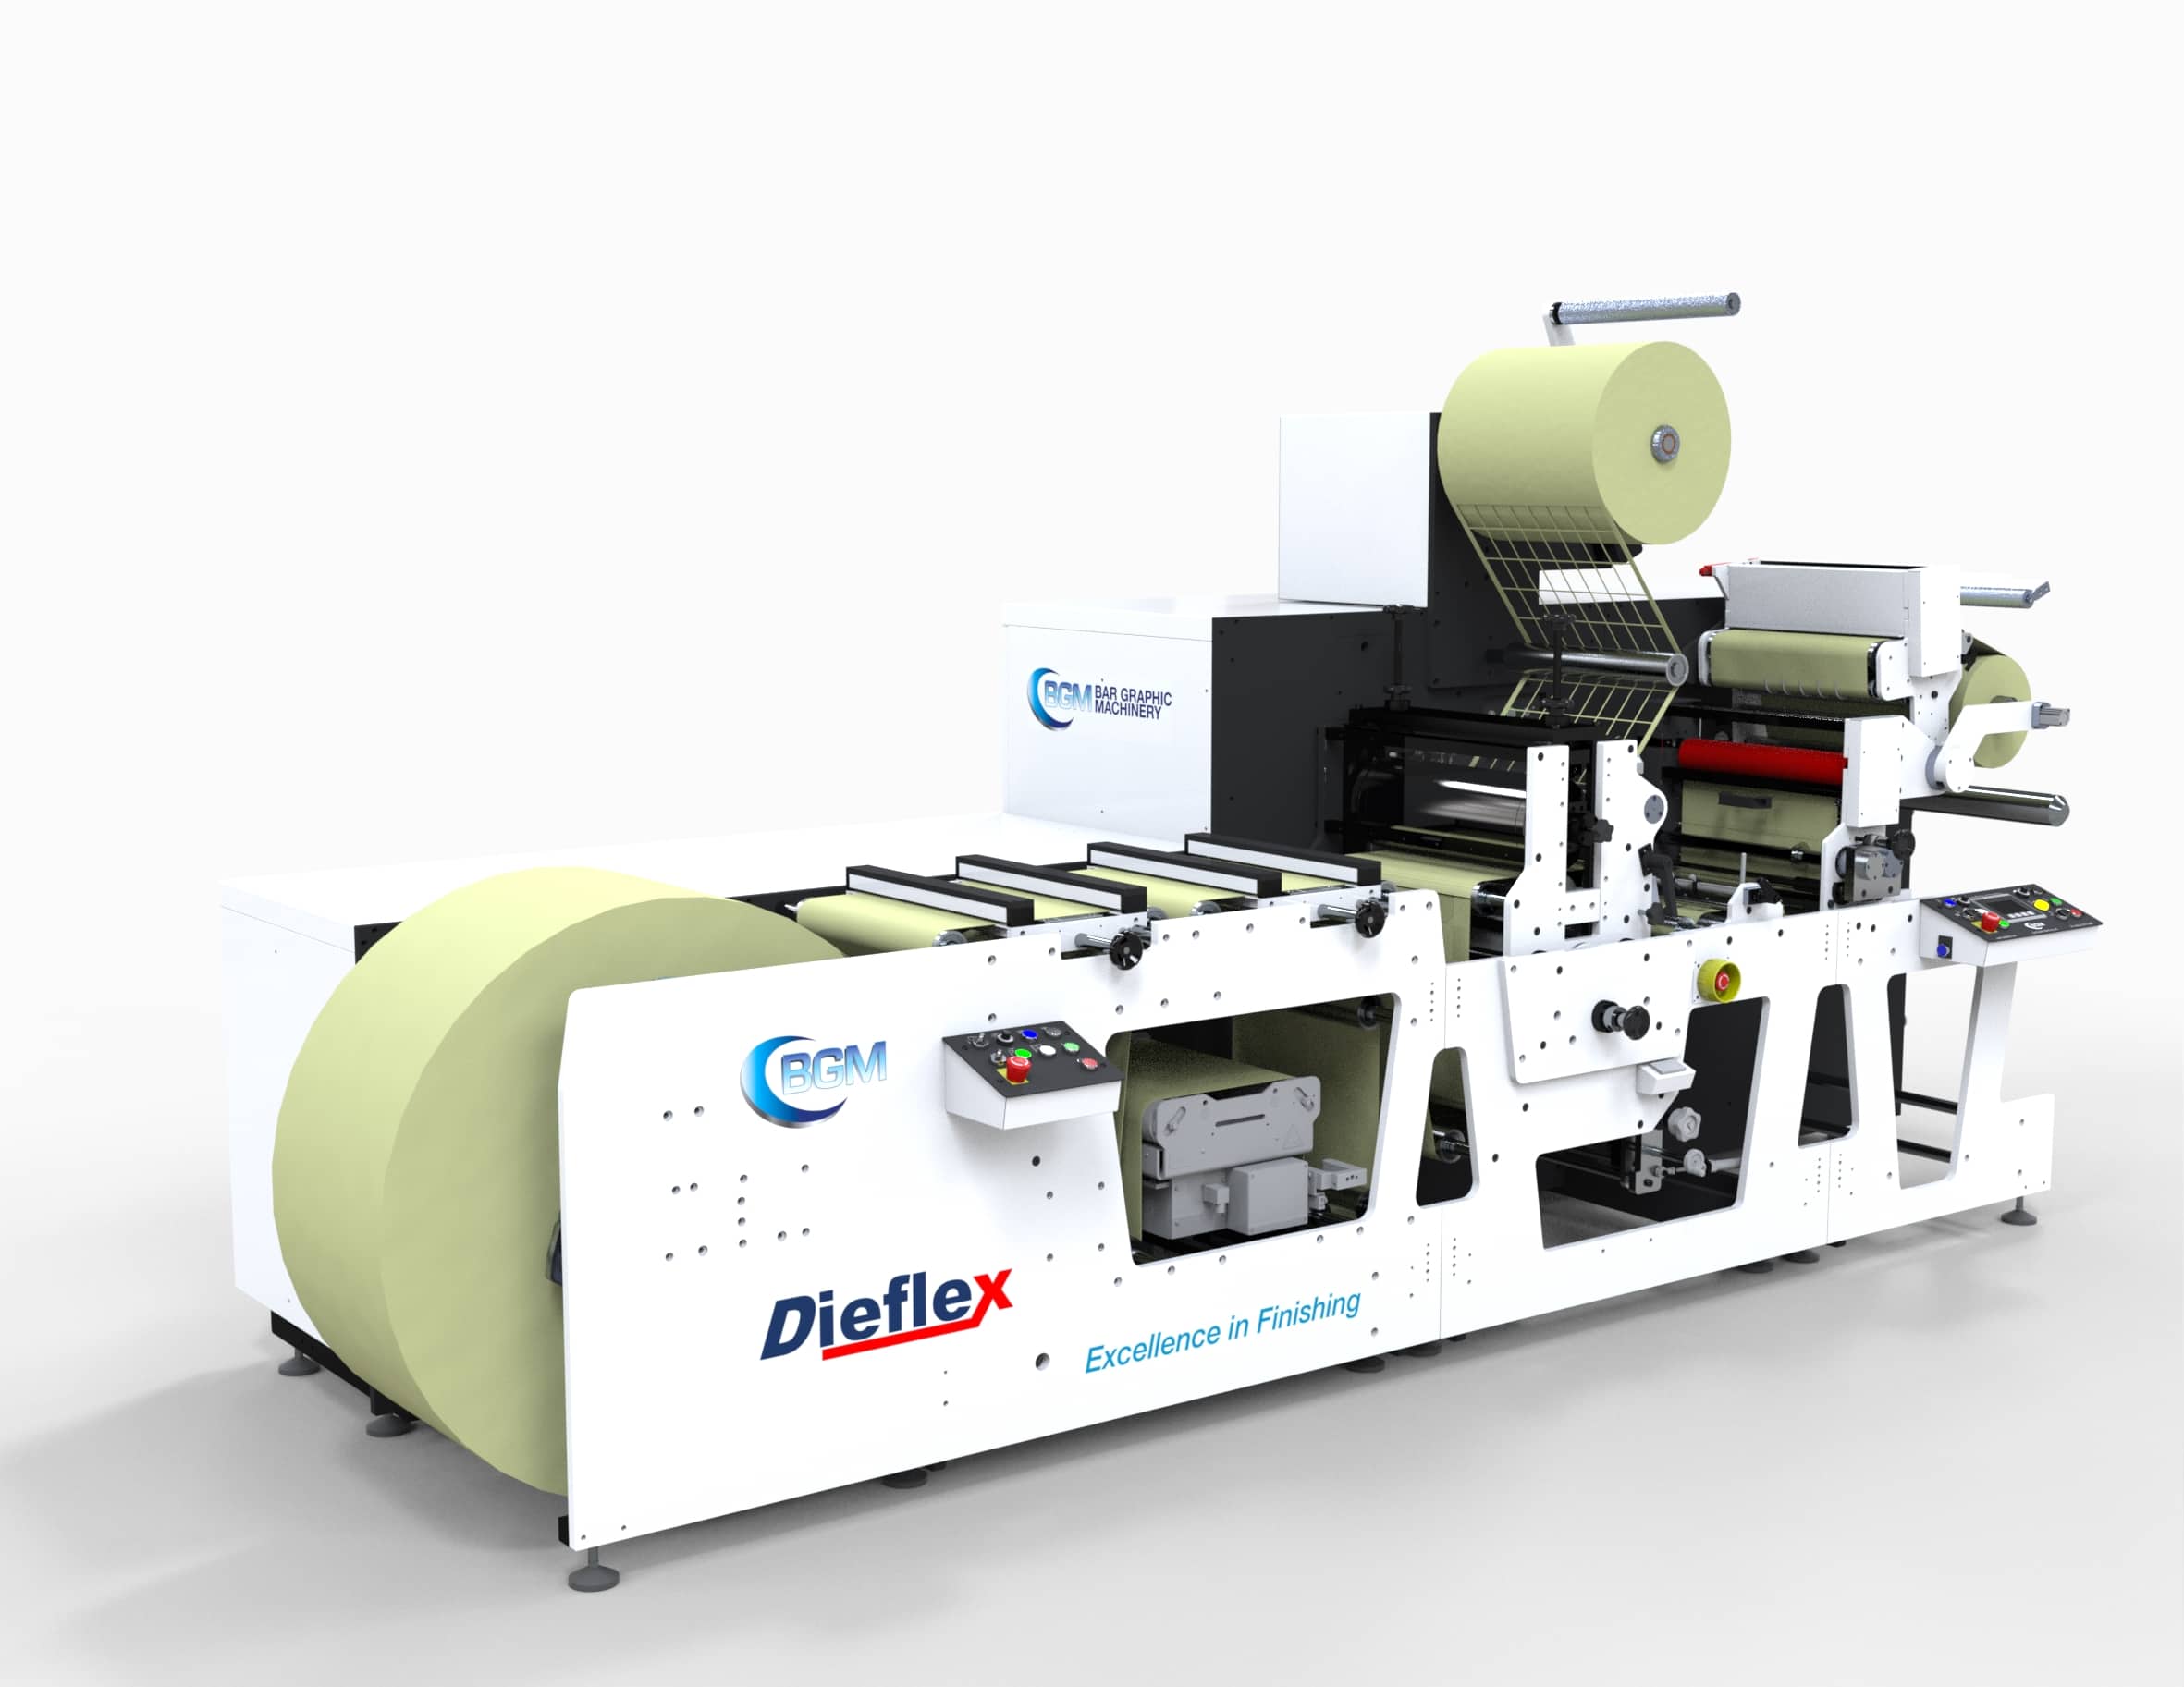 Die neue BGM Elite Dieflex E ist eine Hochgeschwindigkeitslinie für die Verarbeitung und Veredelung von Blanko-Etiketten (Quelle: Bar Graphic Machinery)